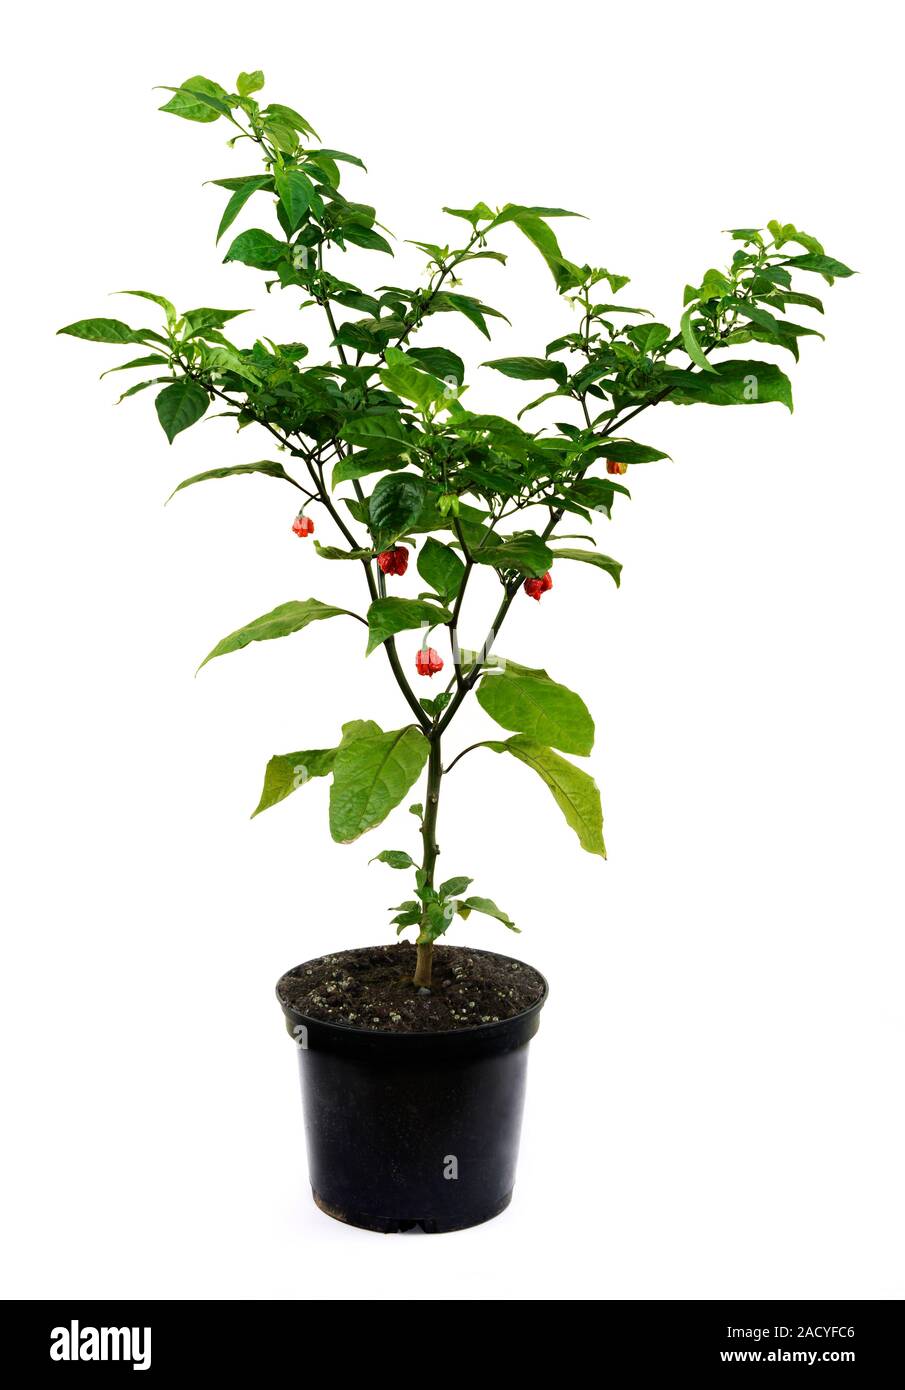 Carolina Reaper plante piment (Capsicum chinense). cultivar hybride chili pepper a été répertorié en 2012 par le Guinness World Records comme le ho Photo Stock - Alamy